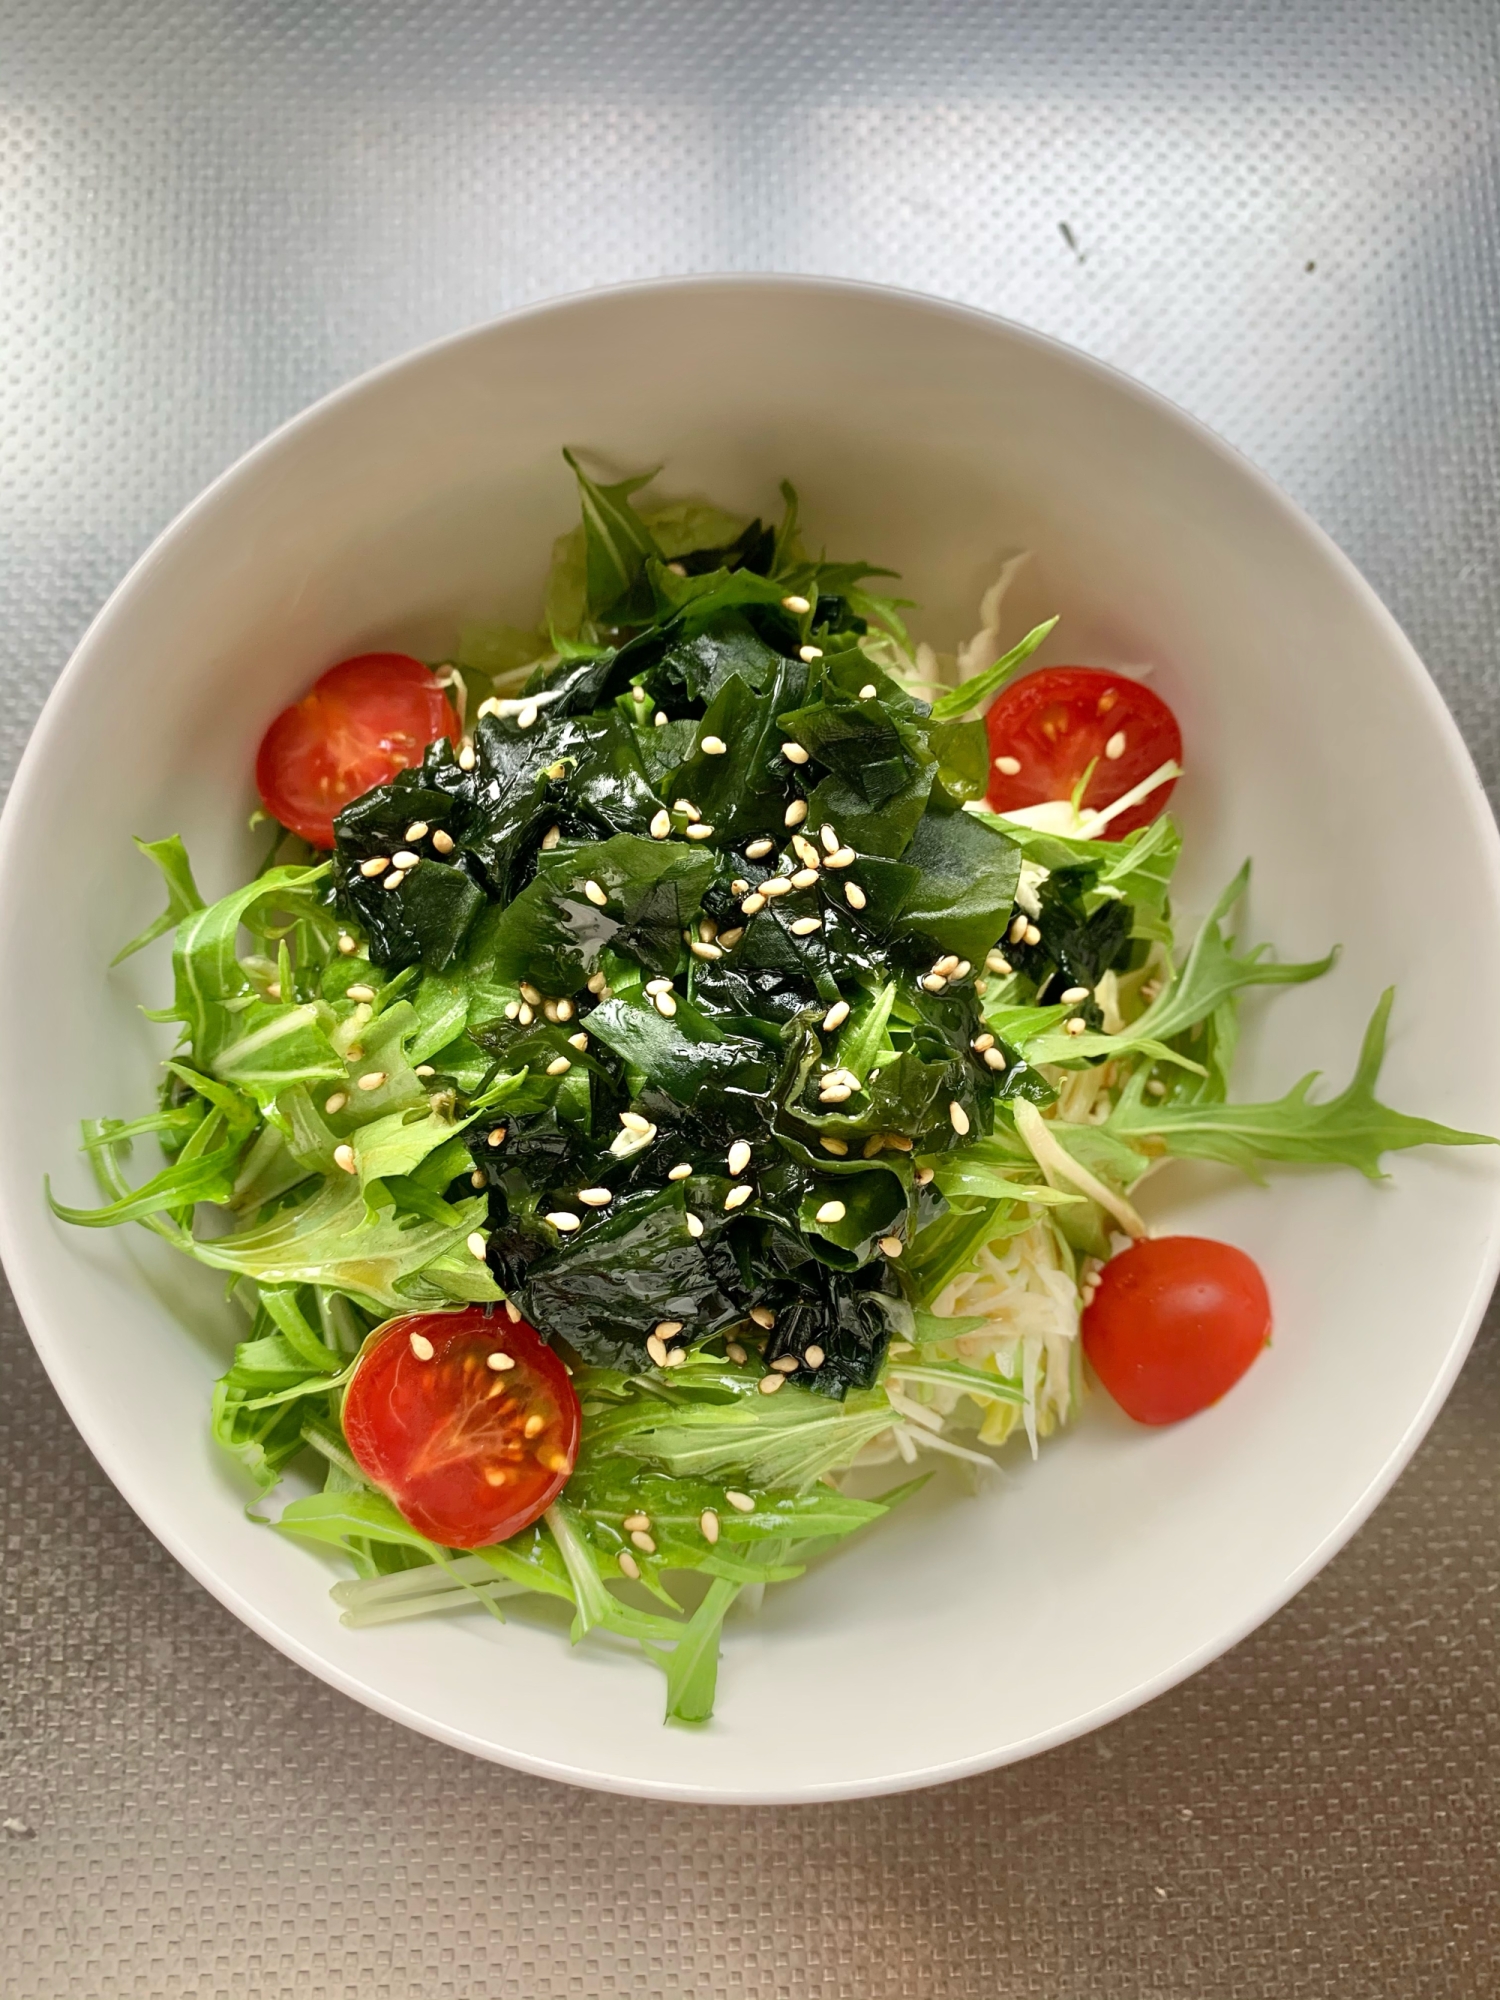 水菜とわかめのチョレギ風サラダ